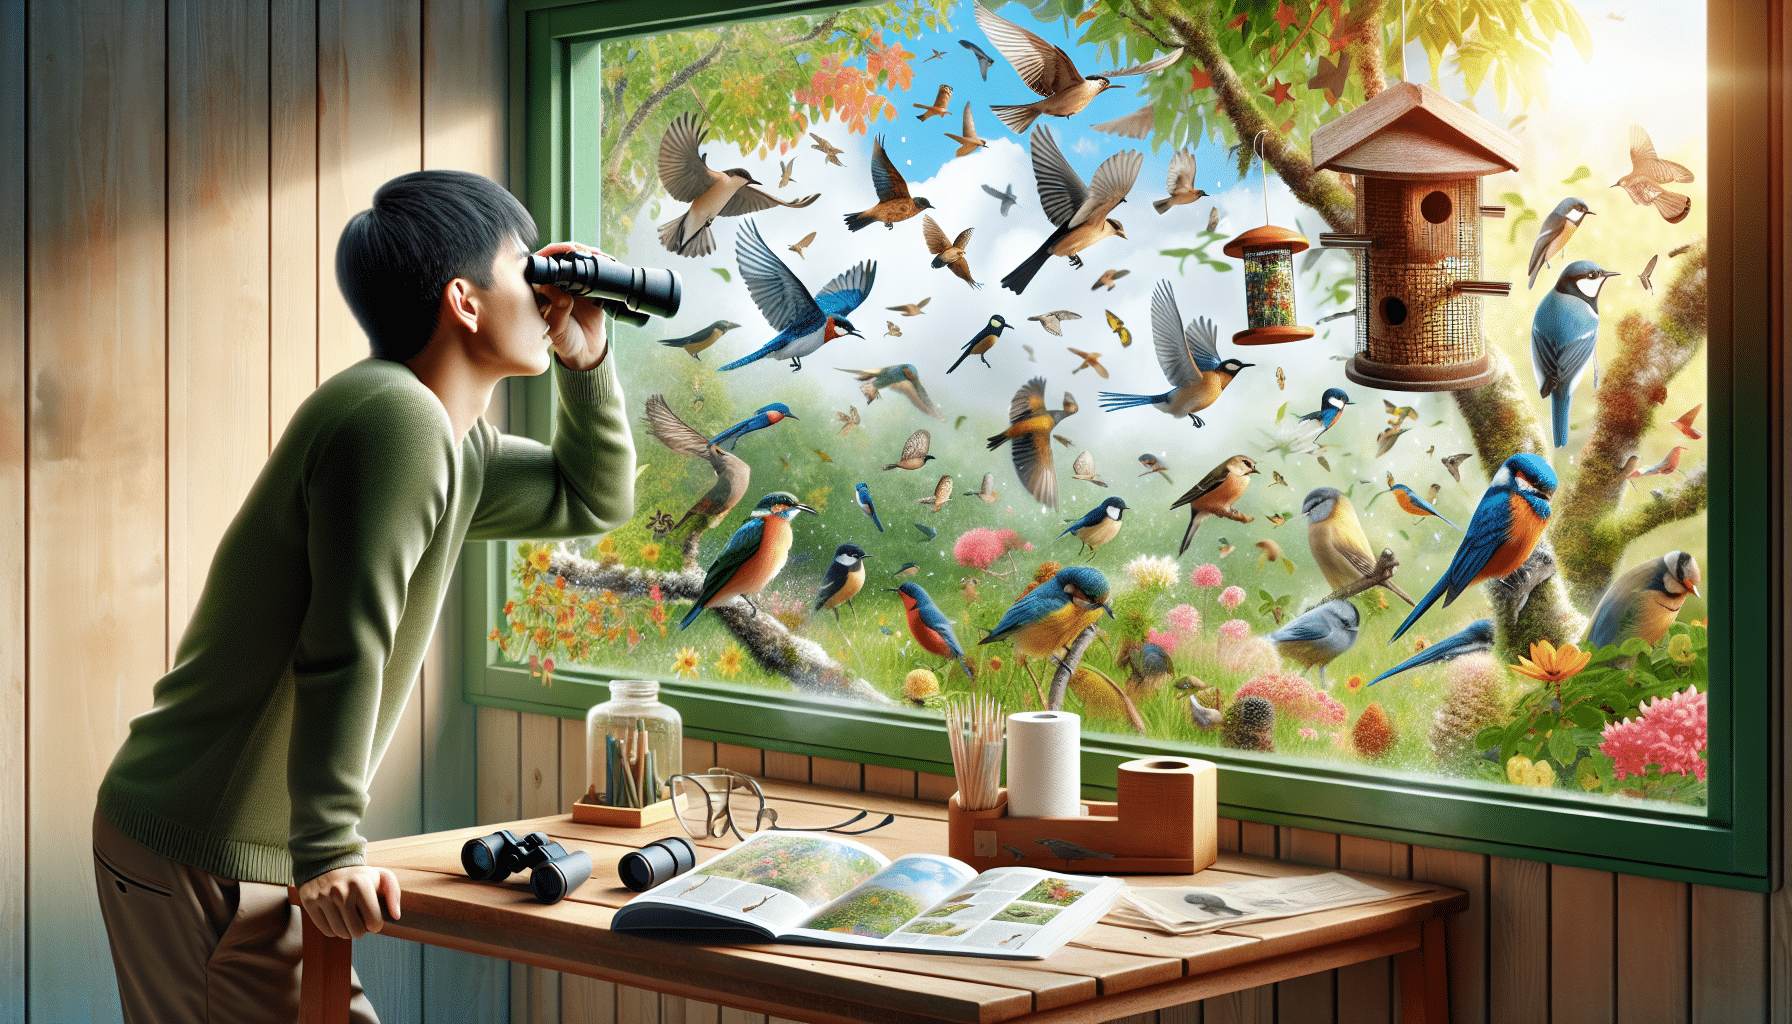 Entdecken Sie den Zauber der Natur und wie Anfänger ihr Leben durch die Vogelbeobachtung im Hinterhof verändern. Finden Sie heraus, wie dieses Hobby einen tiefgreifenden Einfluss auf Ihr Wohlbefinden und Ihre Verbindung zur Natur haben kann.